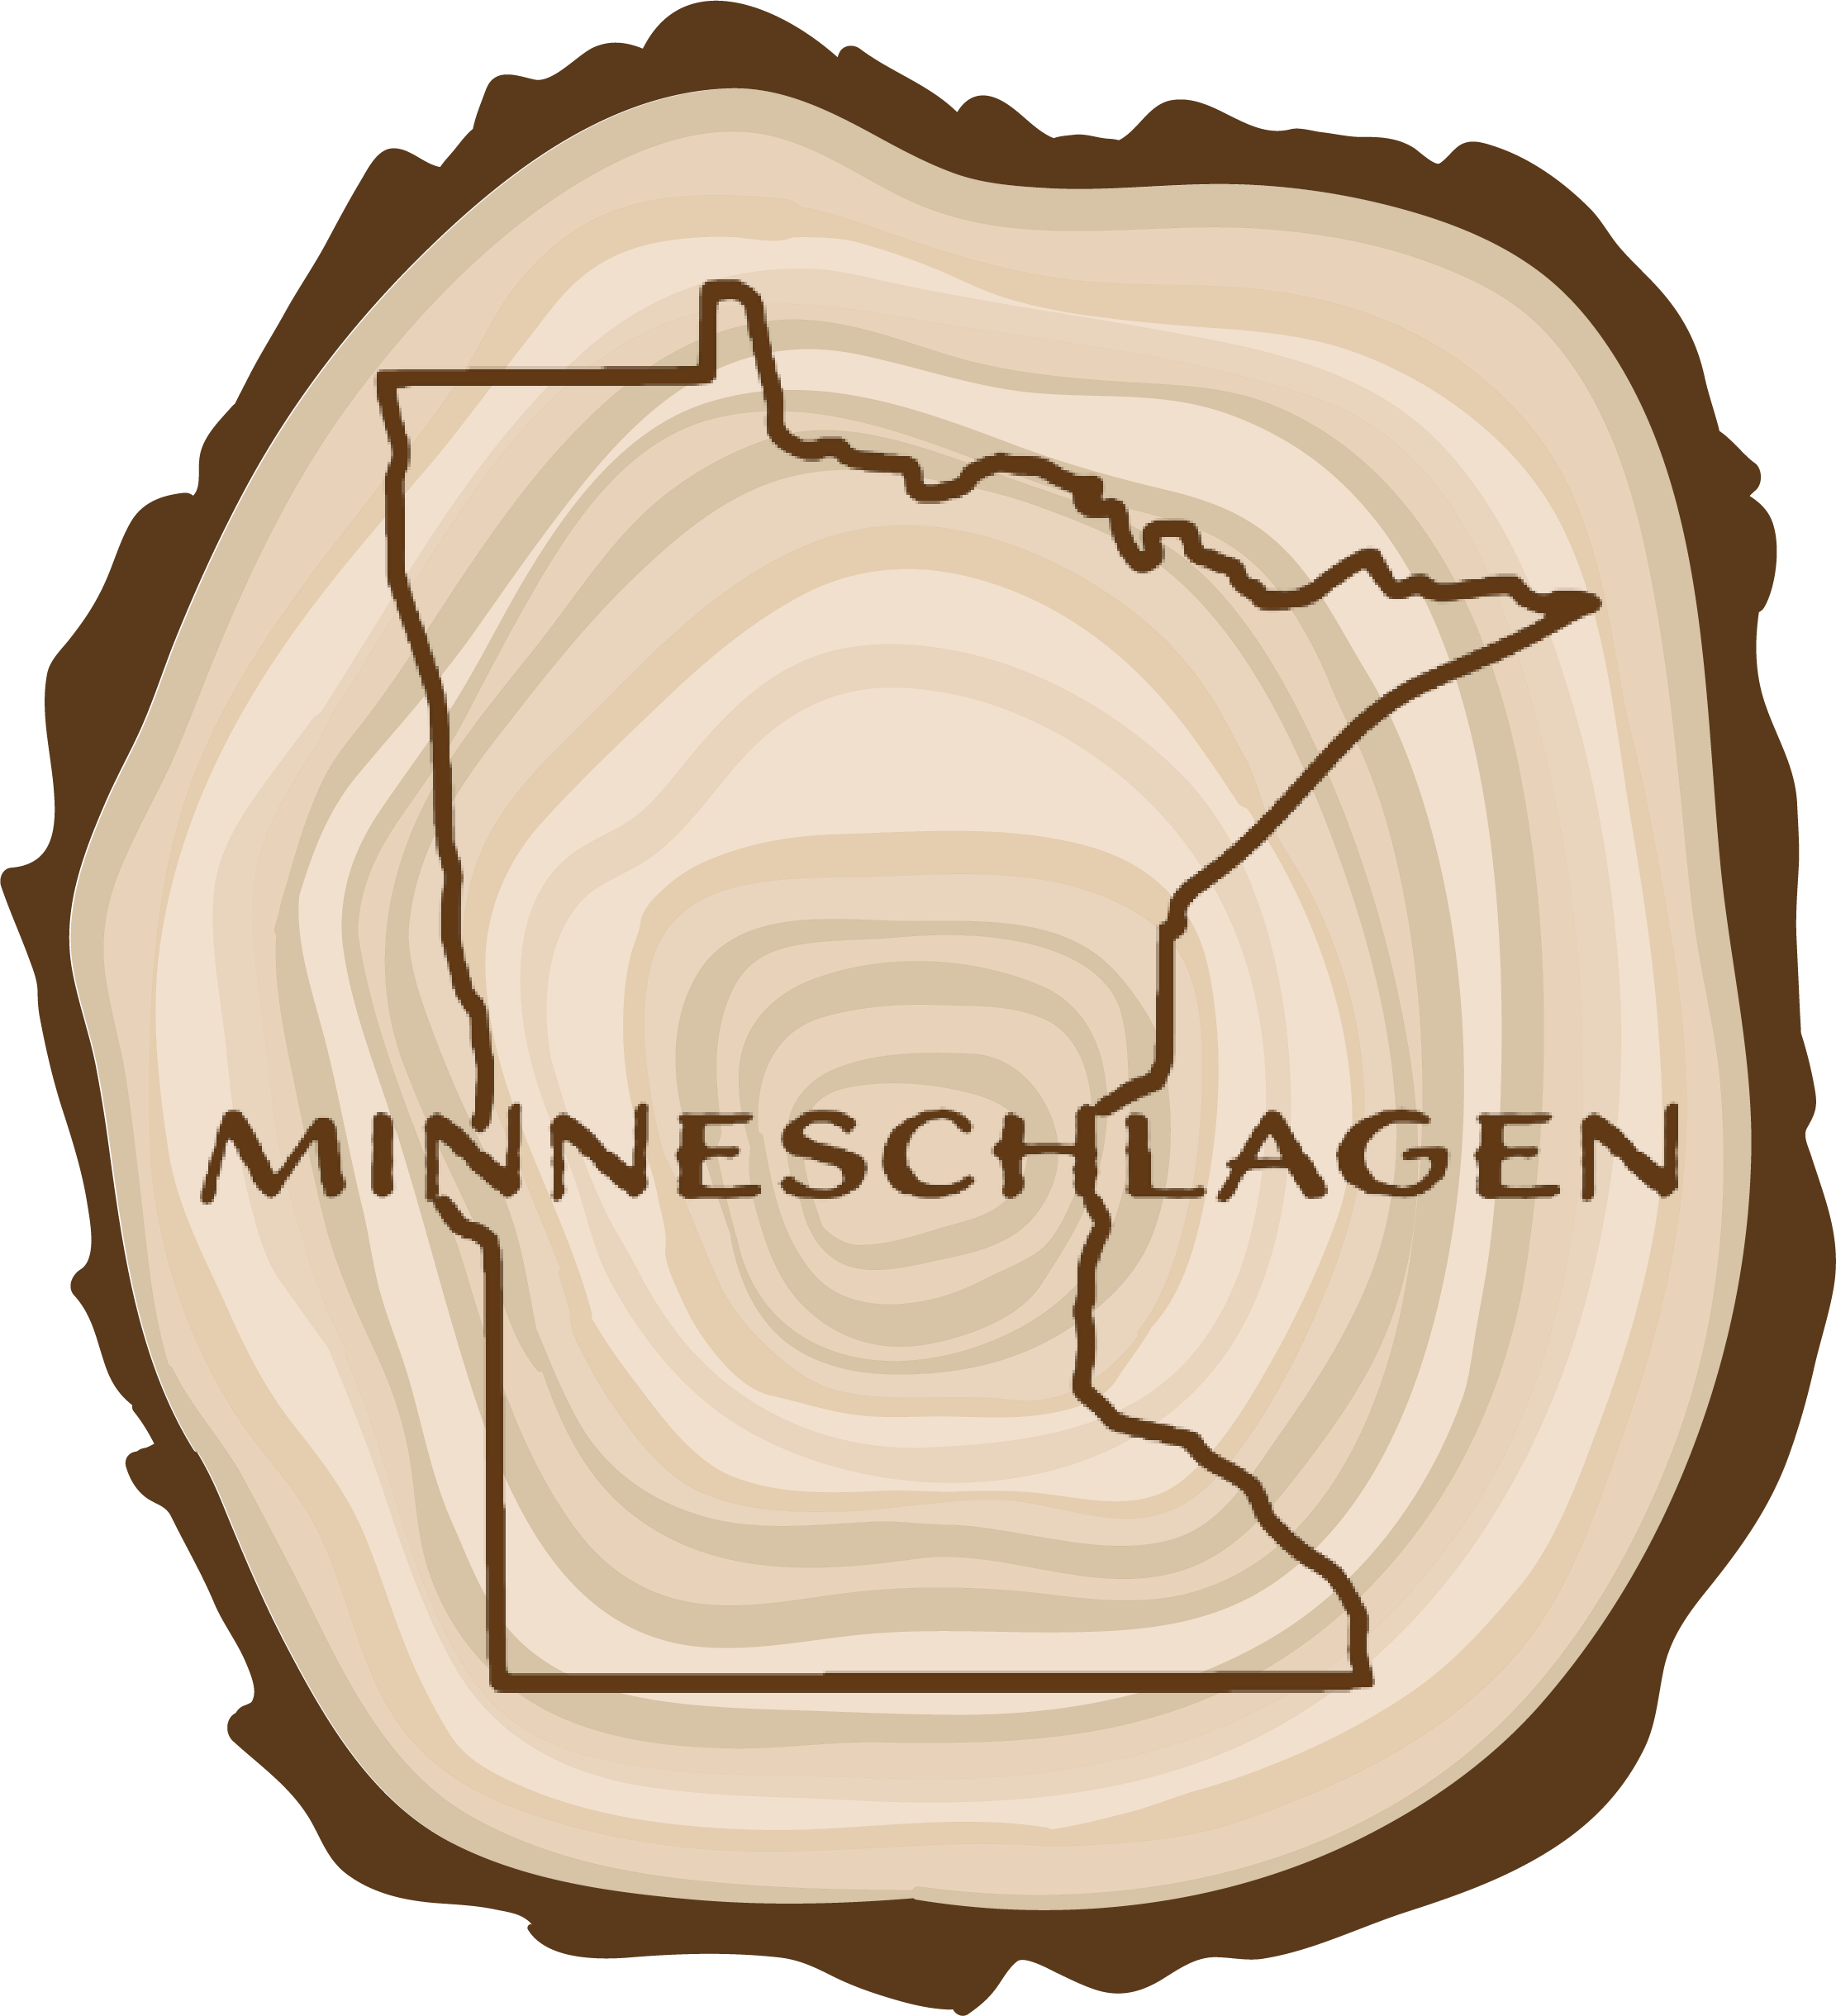 شعار مينيتشلاغن